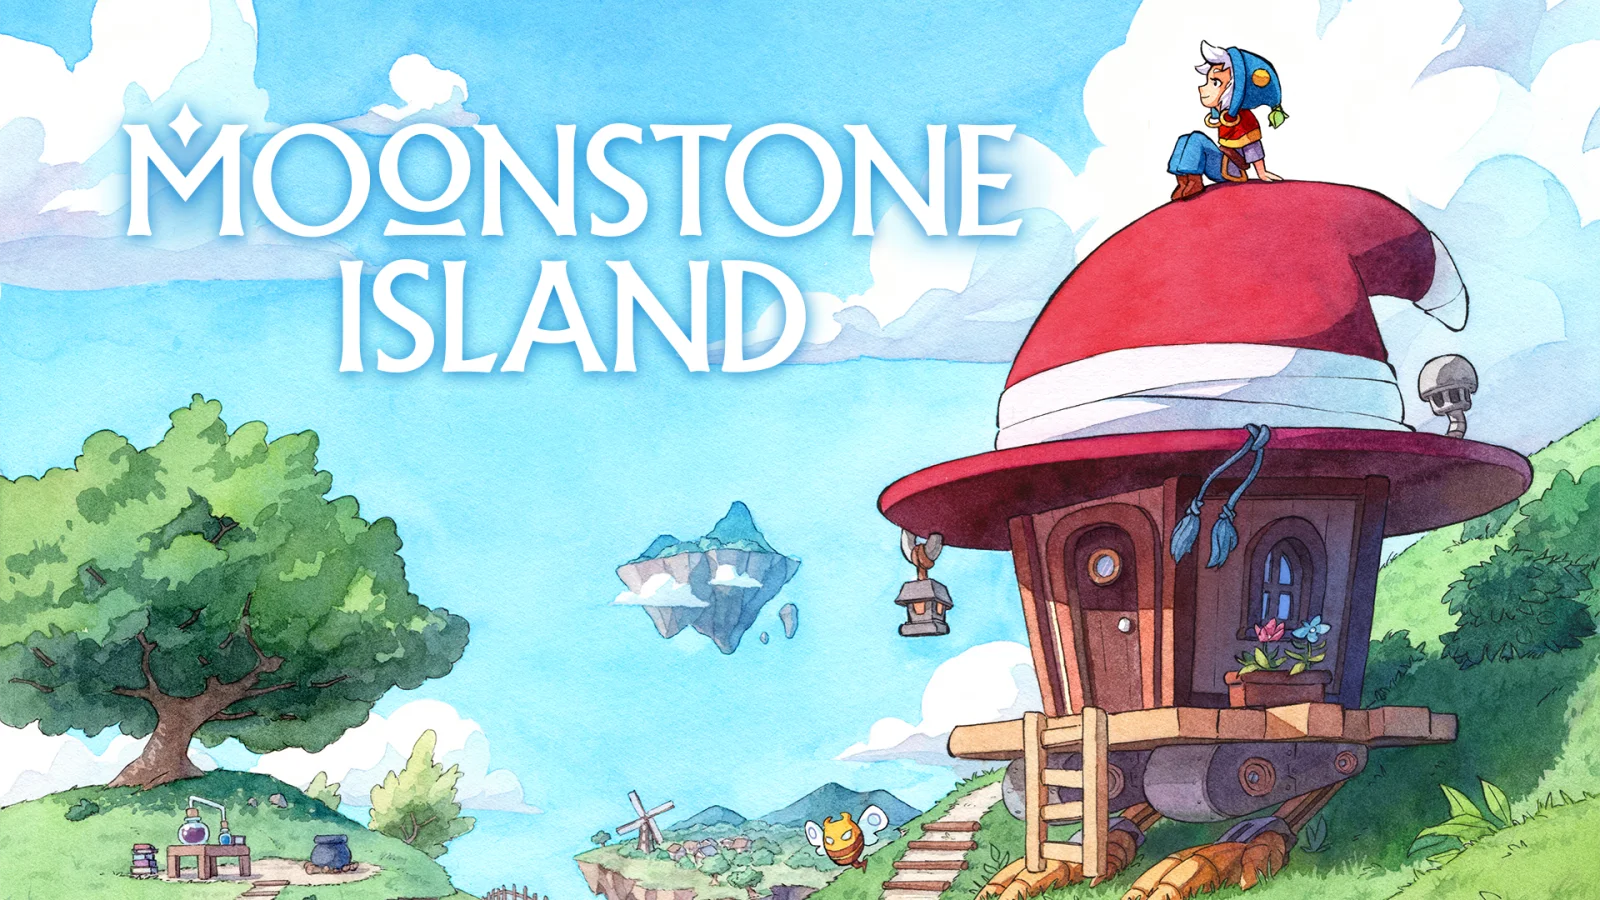 像素风种田生物收集《MOONSTONE ISLAND》将于9月21日在PC平台推出